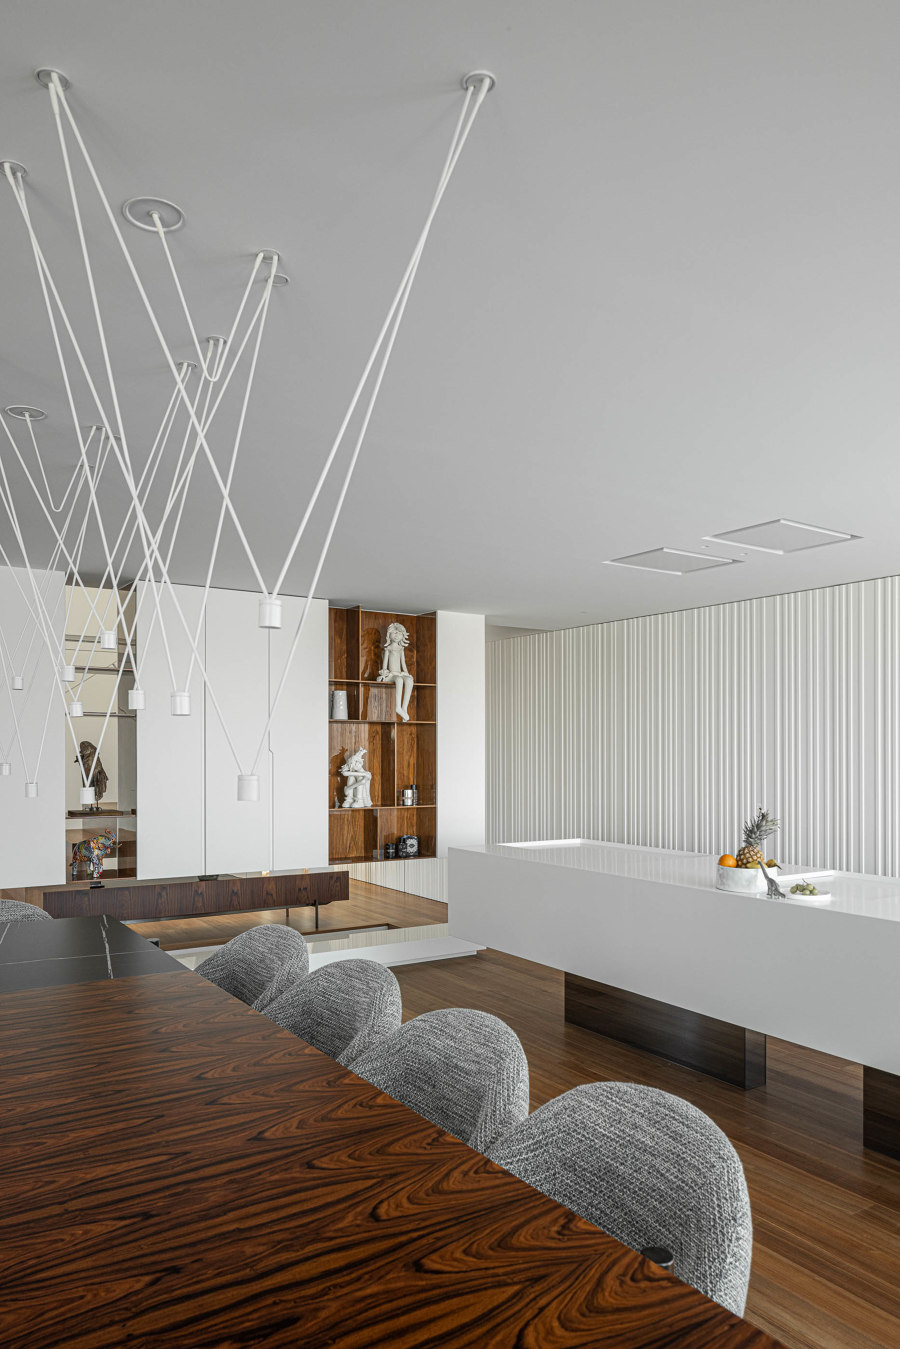 RiscoWhite House von Risco Singular - Arquitectura | Einfamilienhäuser